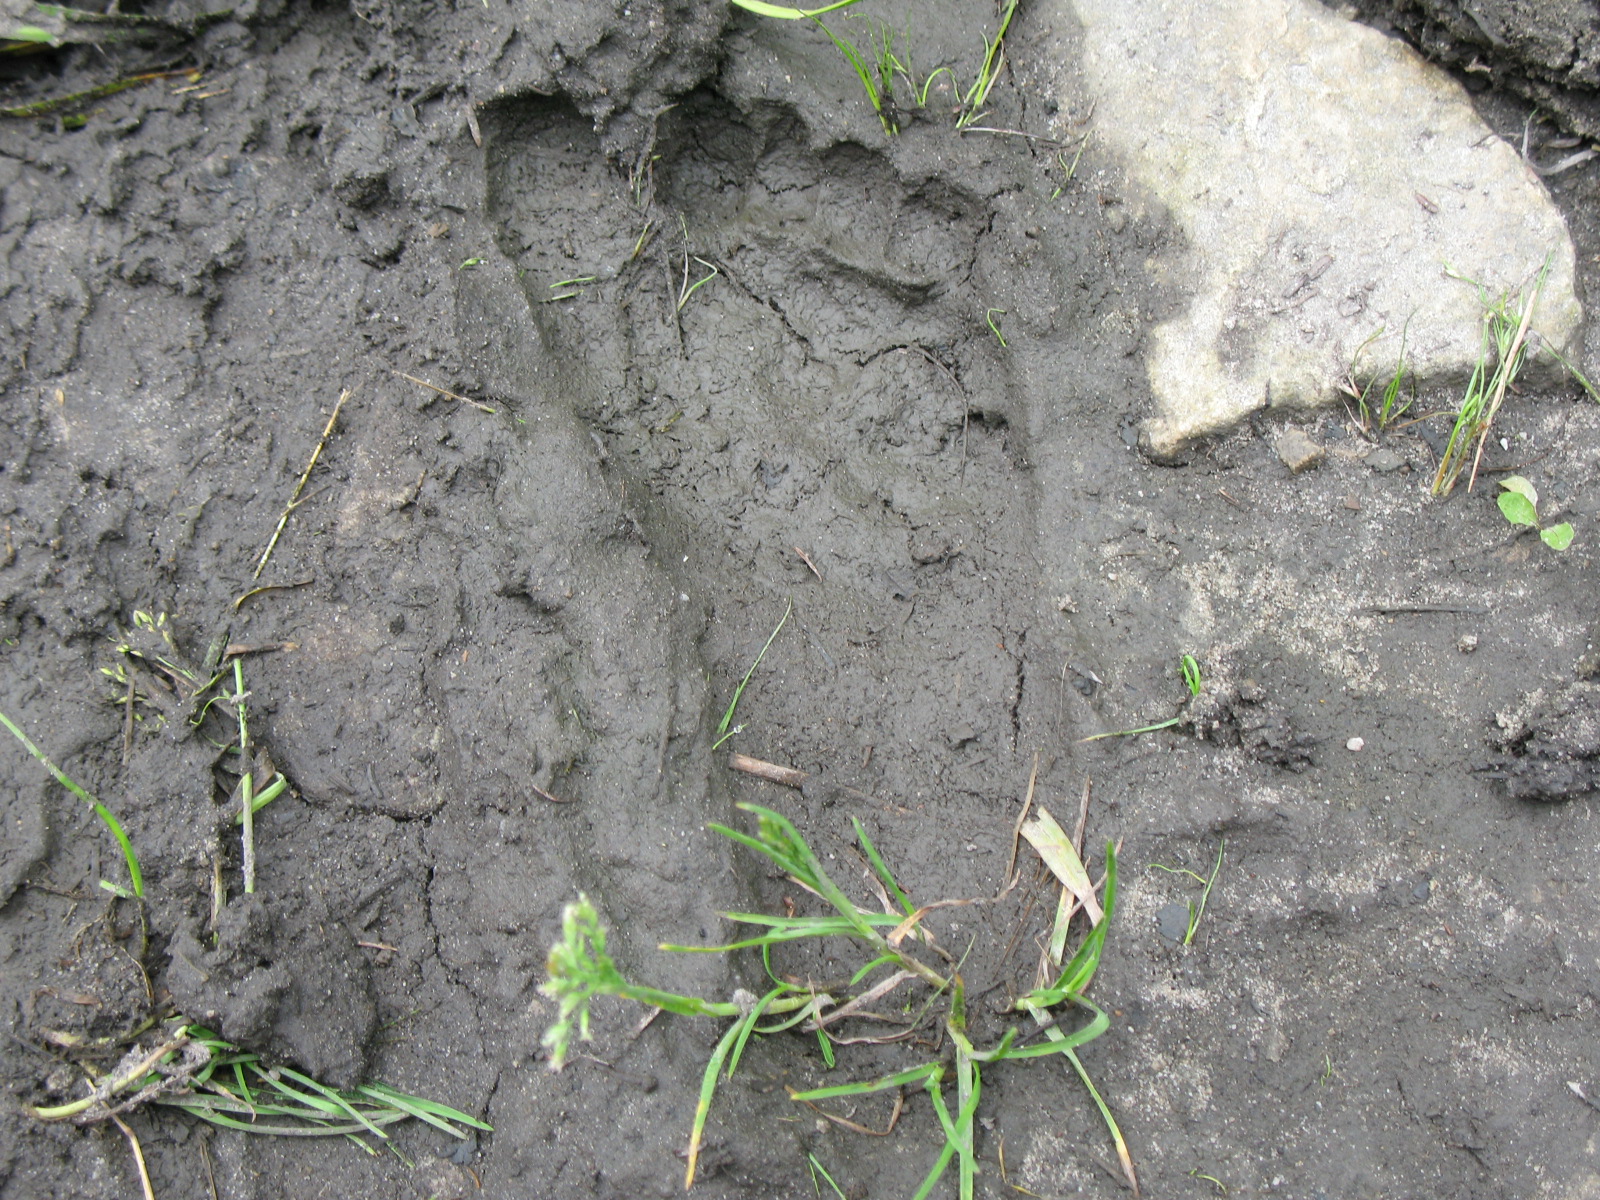 North American Bigfoot: 2007 West Virginia Footprint